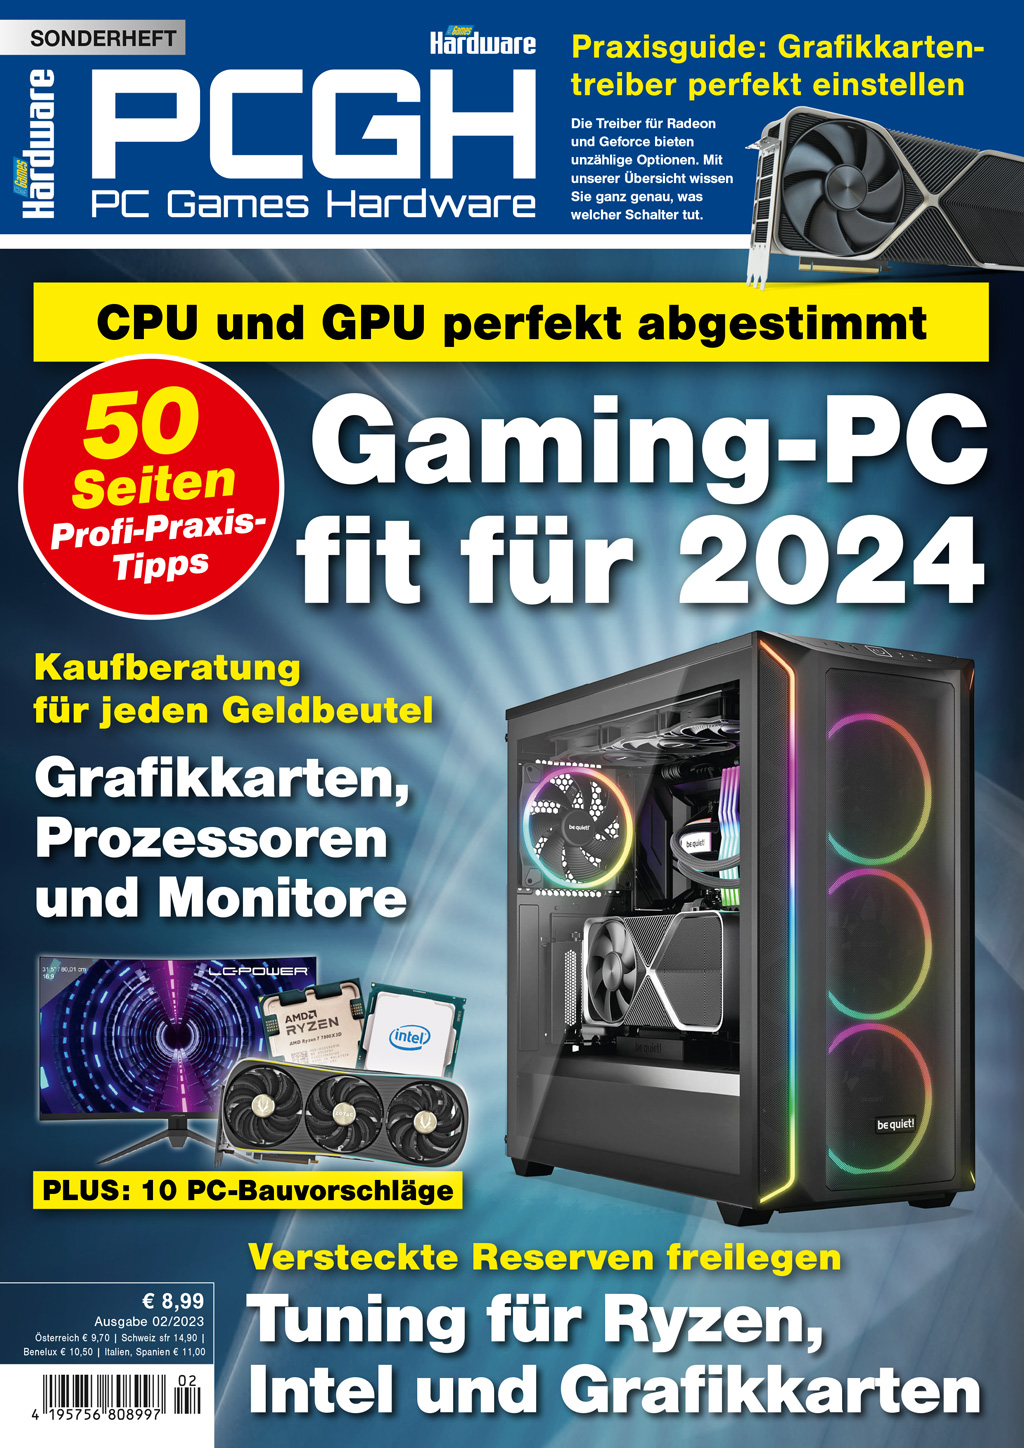 Gaming-PC fit für 2024